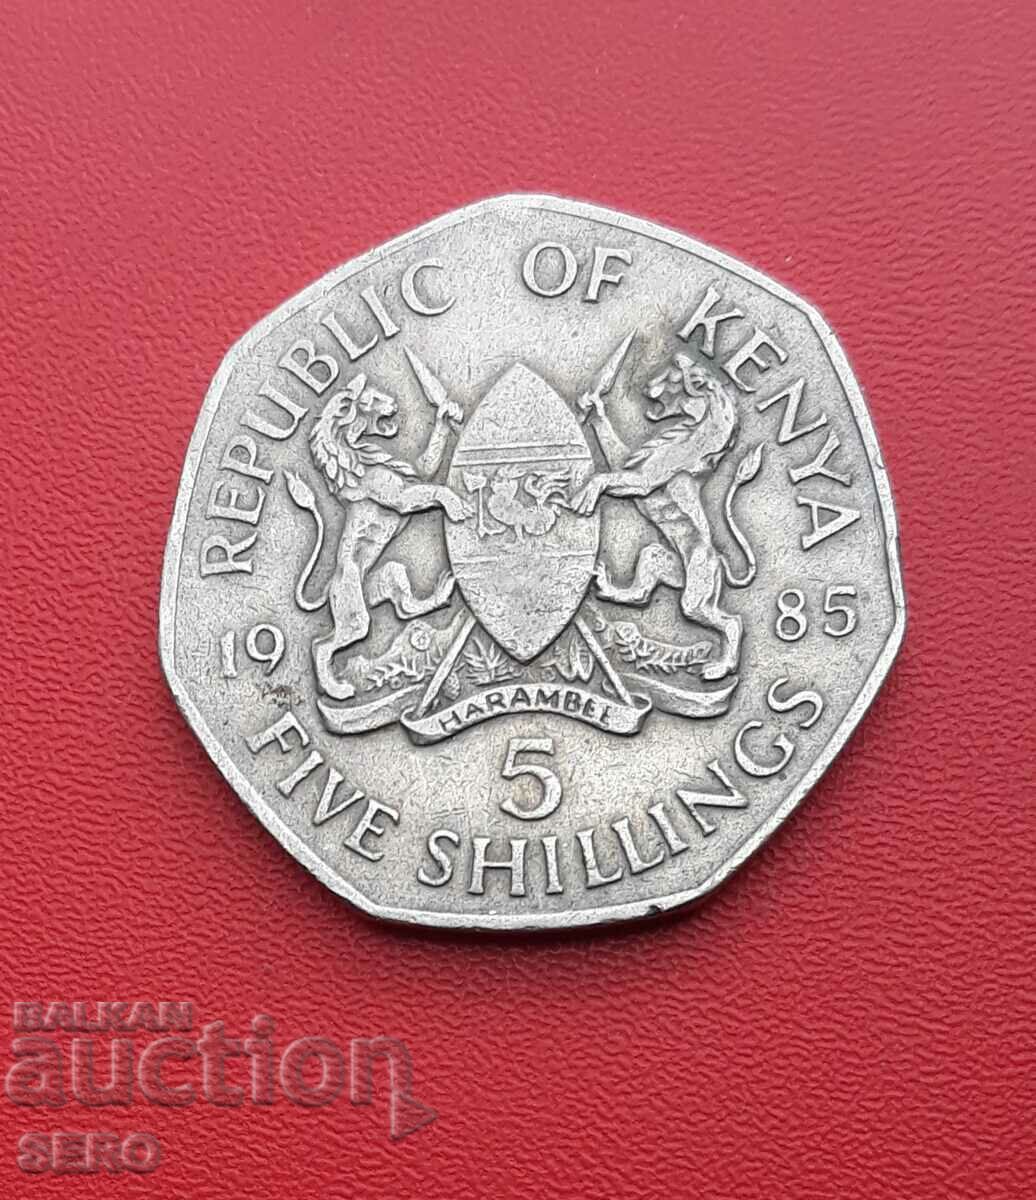 Kenya-5 shillings 1985